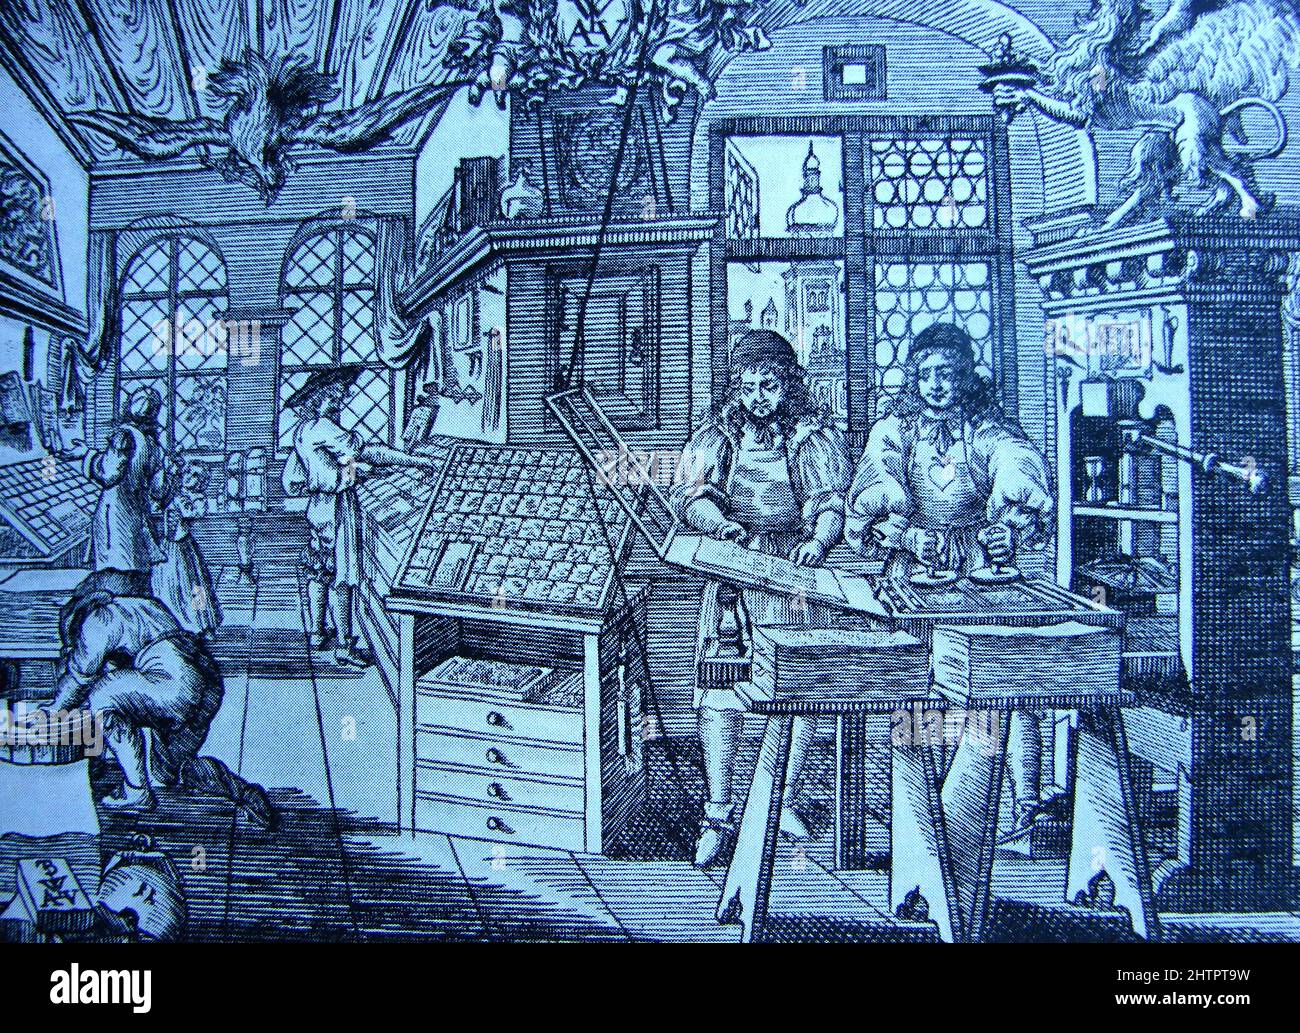 Ein mittelalterlicher Druck, der europäische Drucker mit Blockdruckverfahren zeigt. Der Holzschnitt wurde in Europa bis Mitte des 15.. Jahrhunderts verwendet. Danach baute Johannes Gutenberg die erste praktische Druckmaschine und war Vorreiter bei der Massenproduktion beweglicher Druckmaschinen (eingeführt von William Caxton nach England). Stockfoto